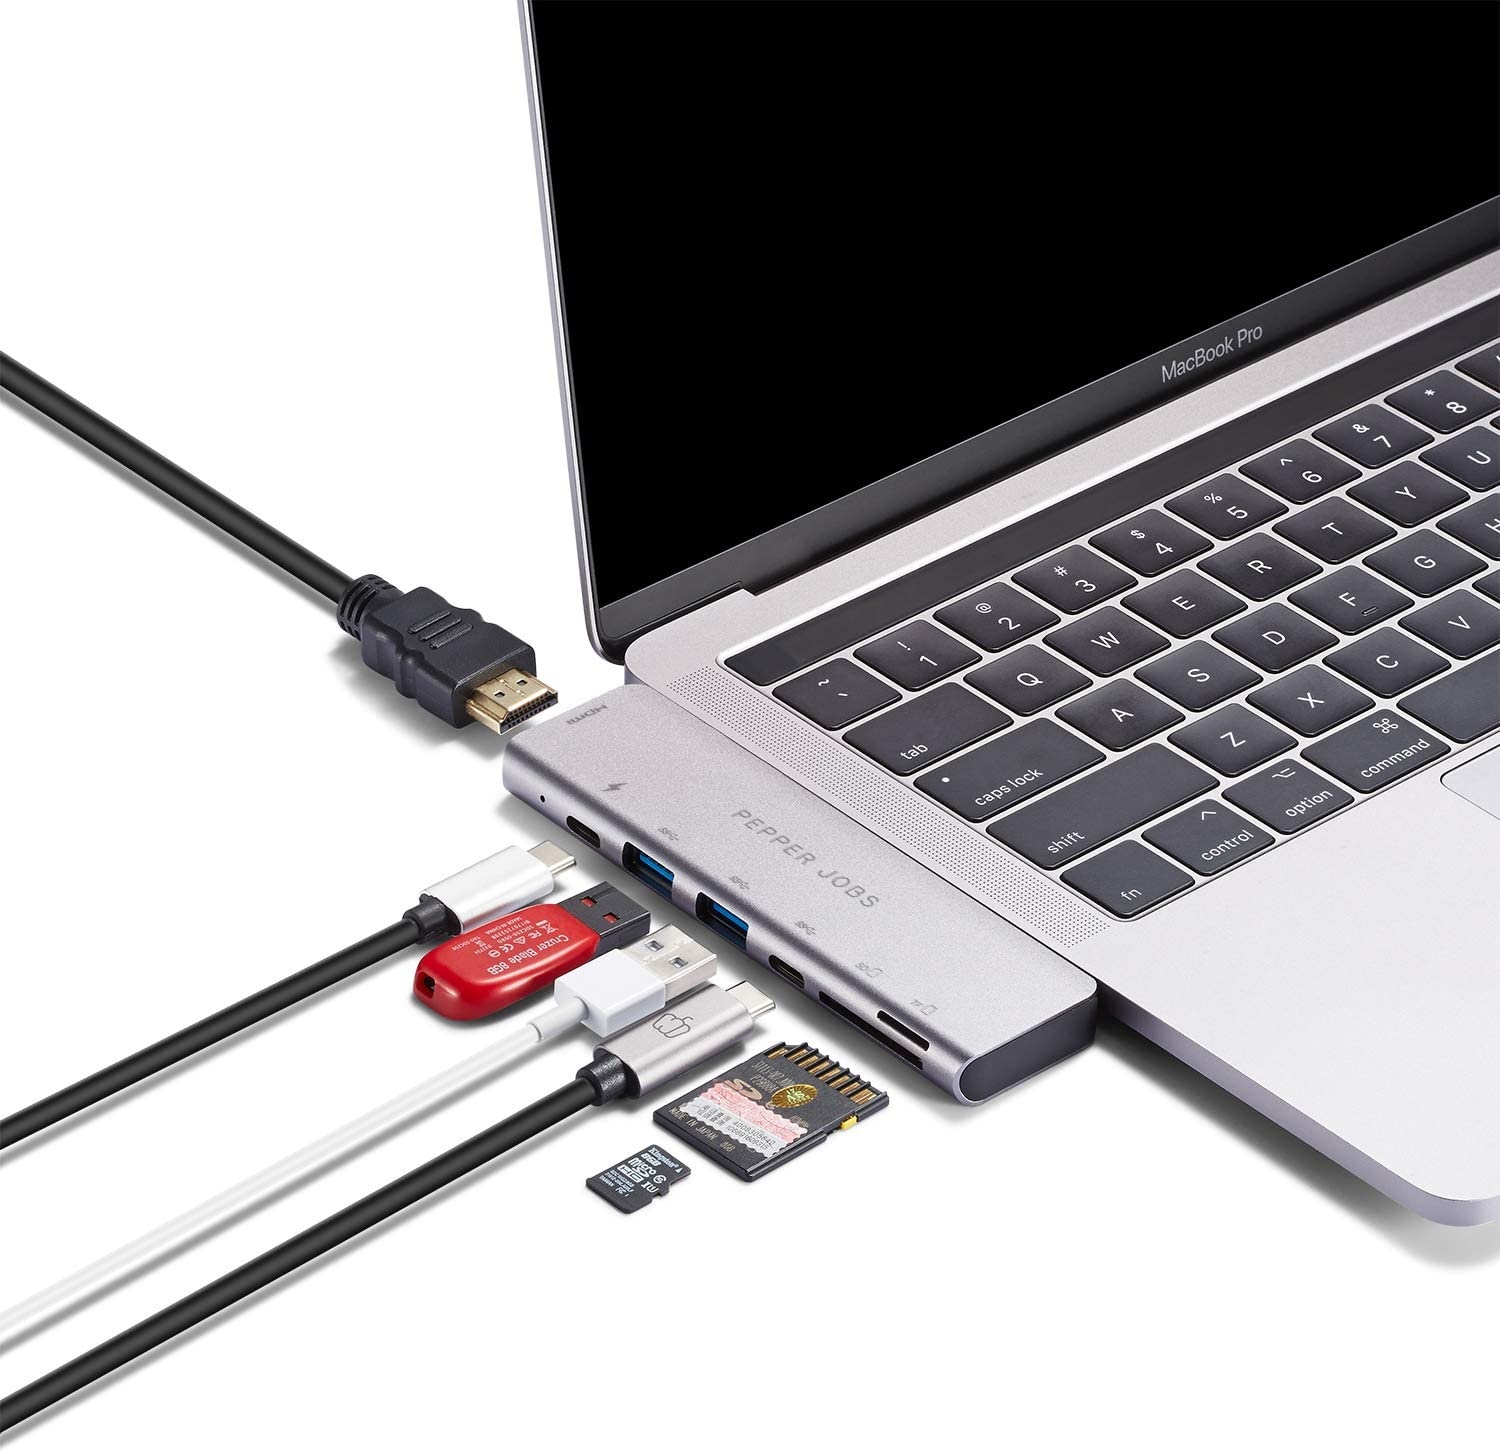 MBP7 est un double hub USB-C 3.1 à USB 3.0 avec une sortie HDMI 4K